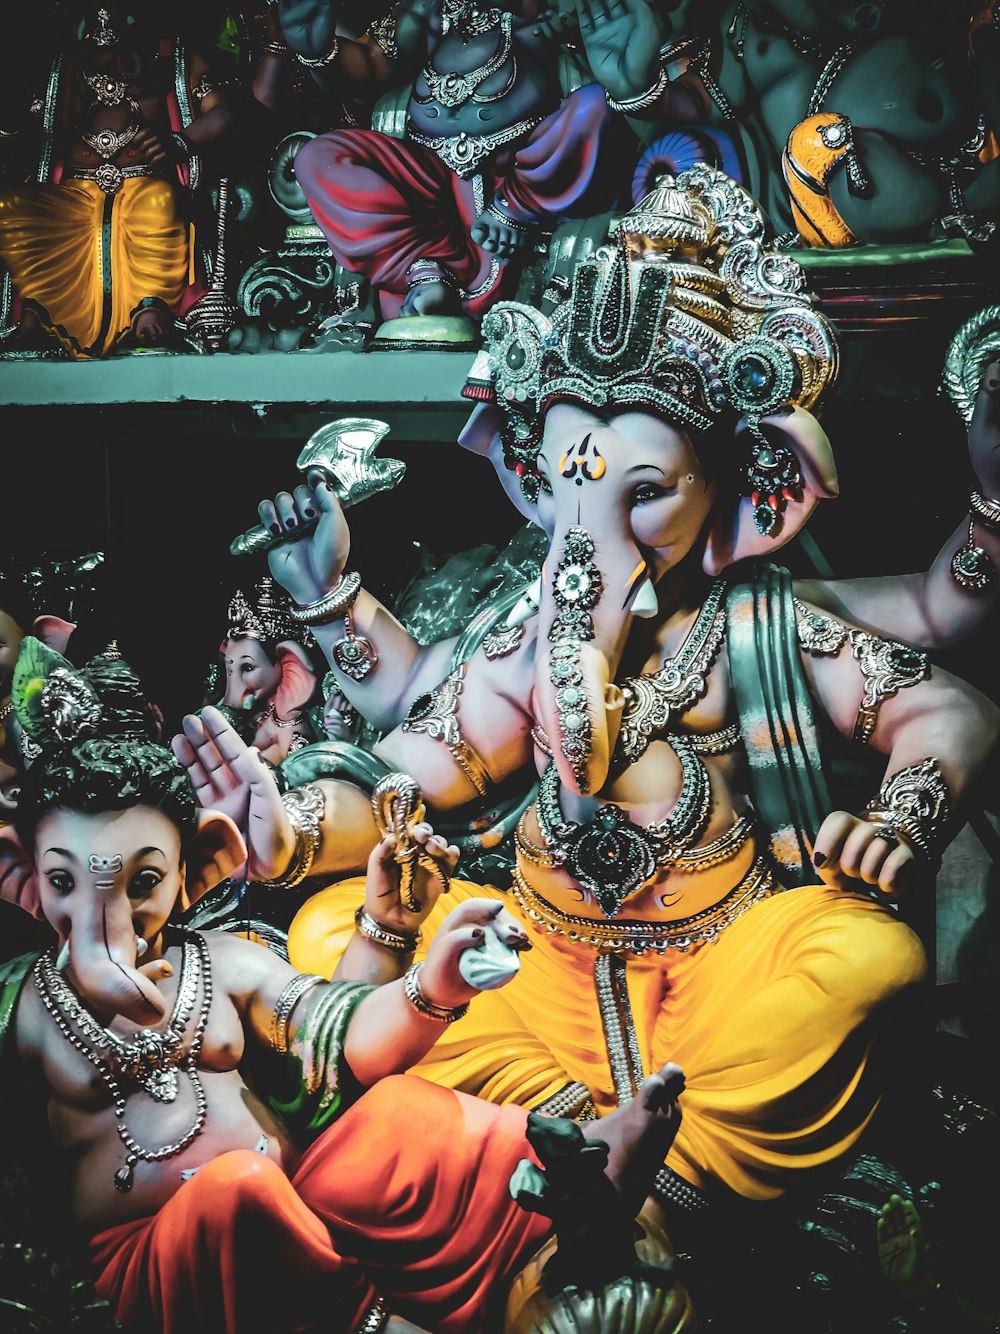 Ganesha Hindu Deity figurine